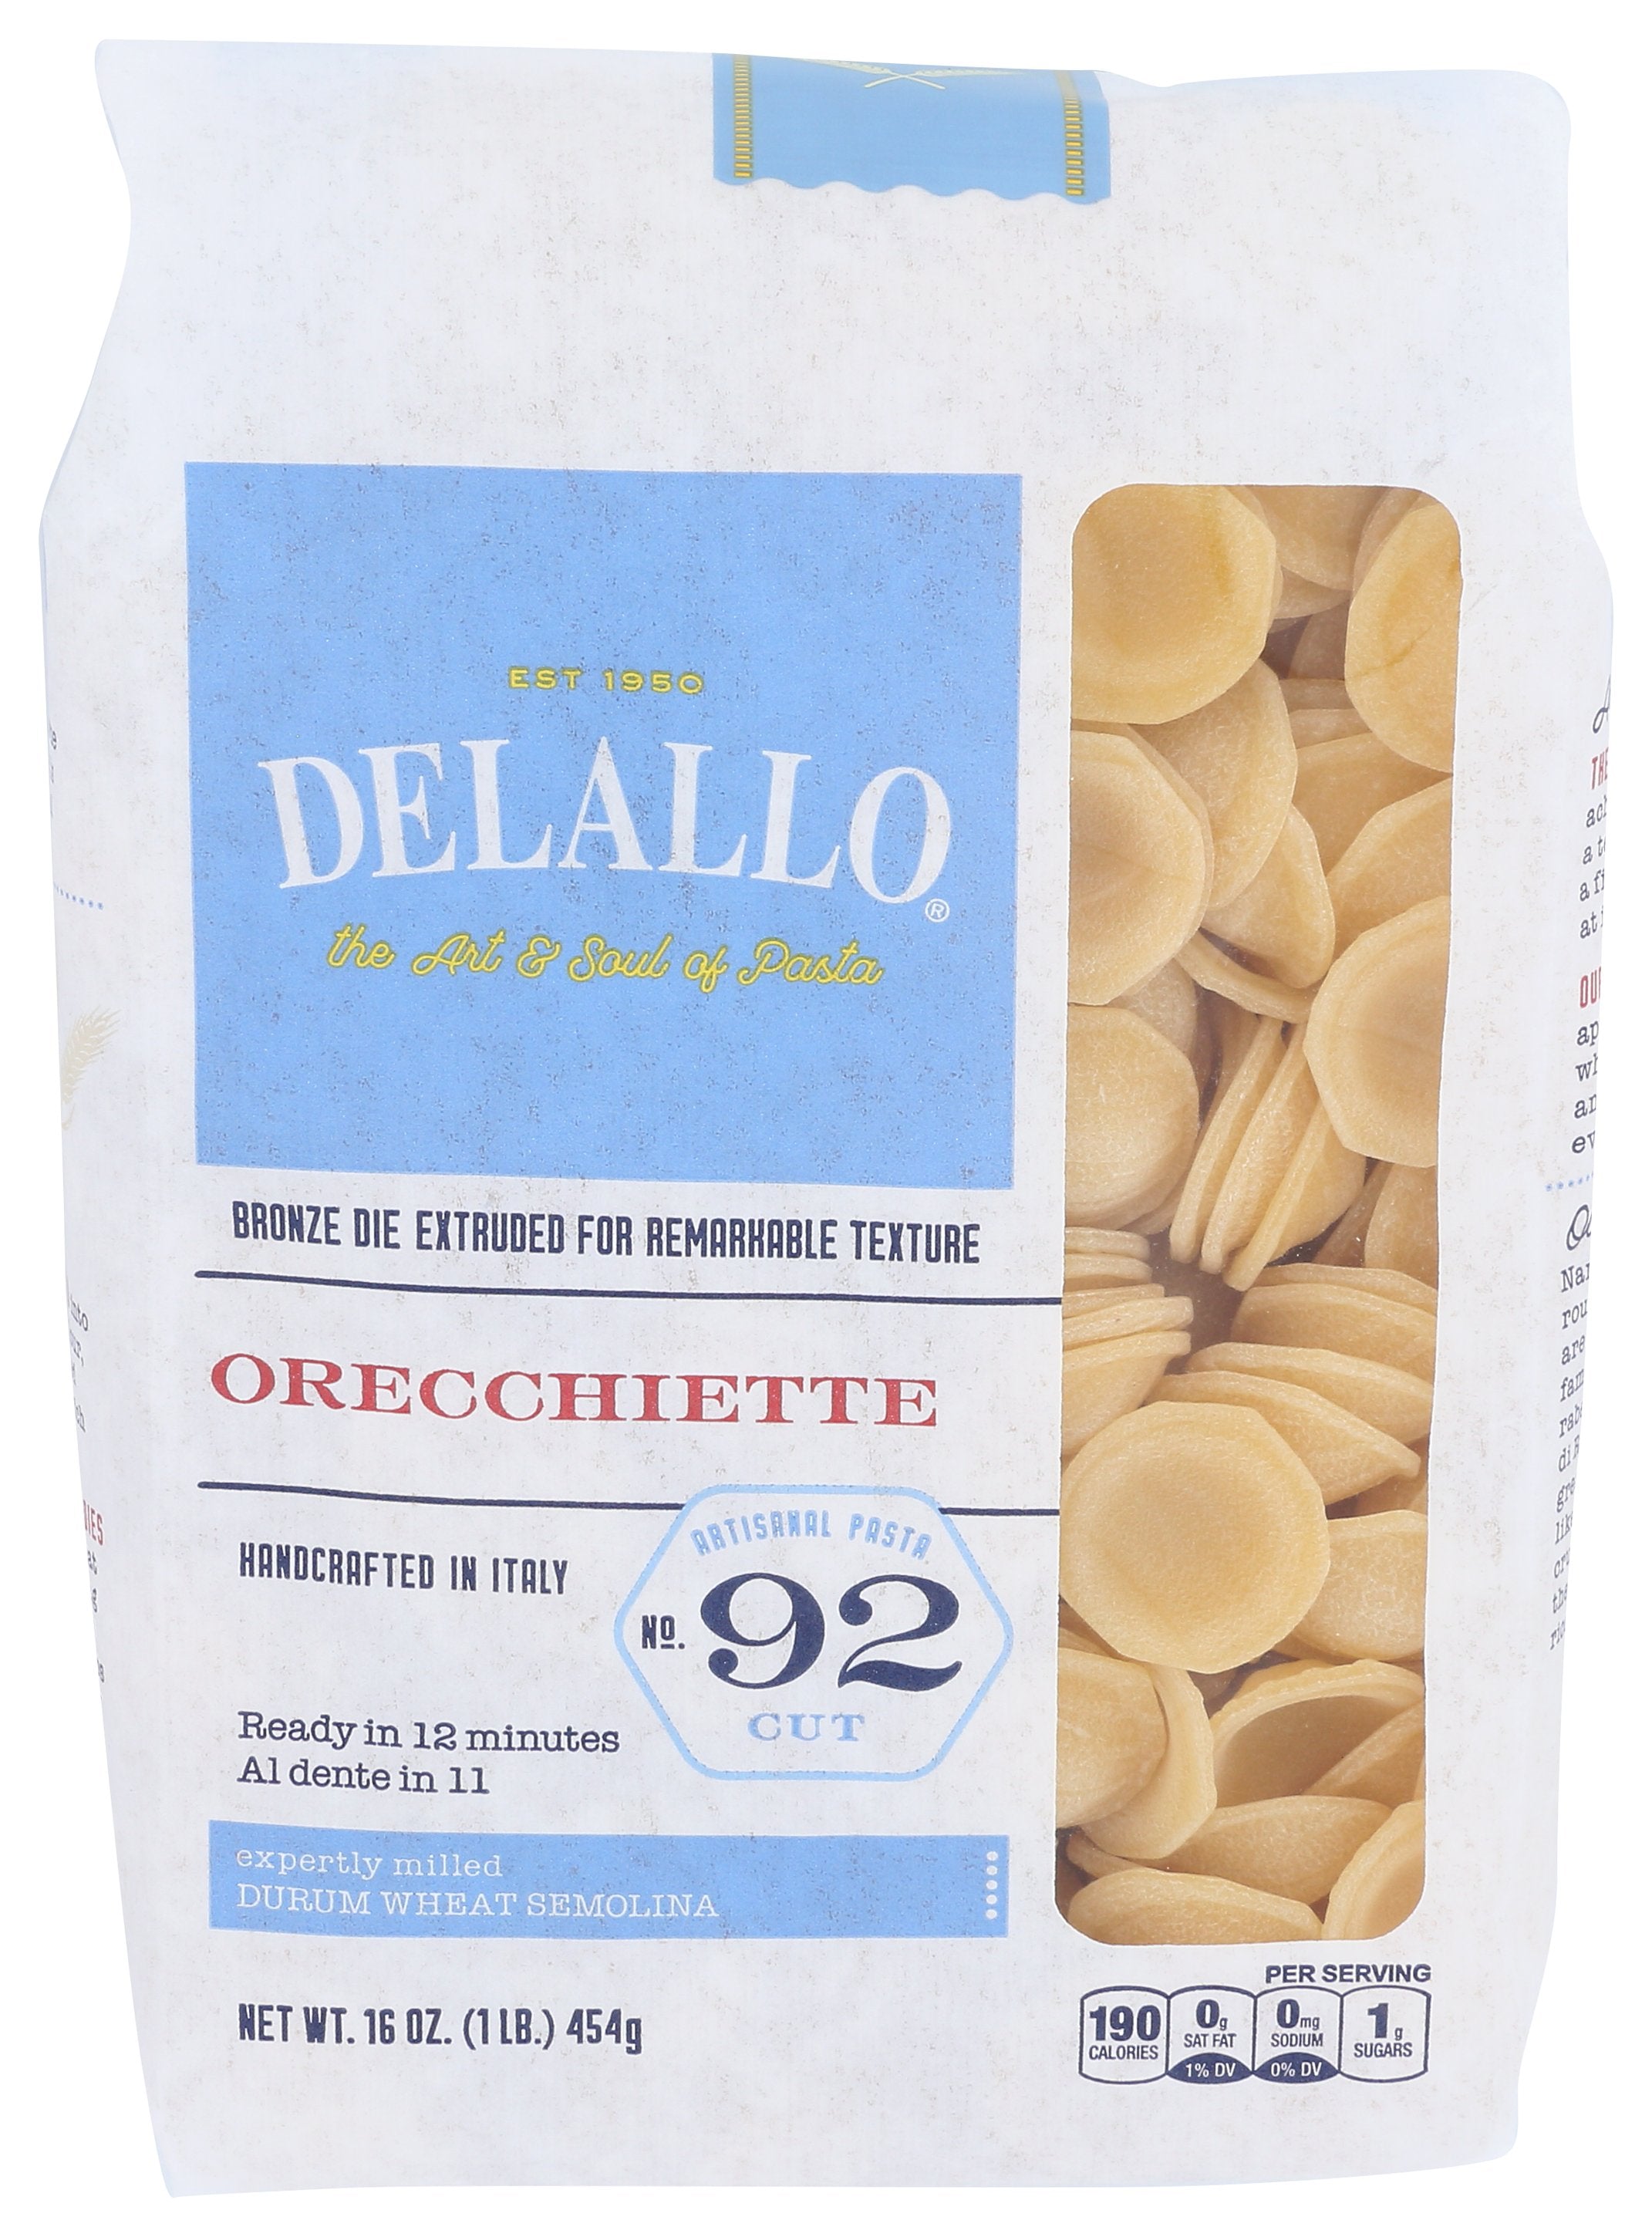 DELALLO ORECCHIETTE #92 - Case of 8